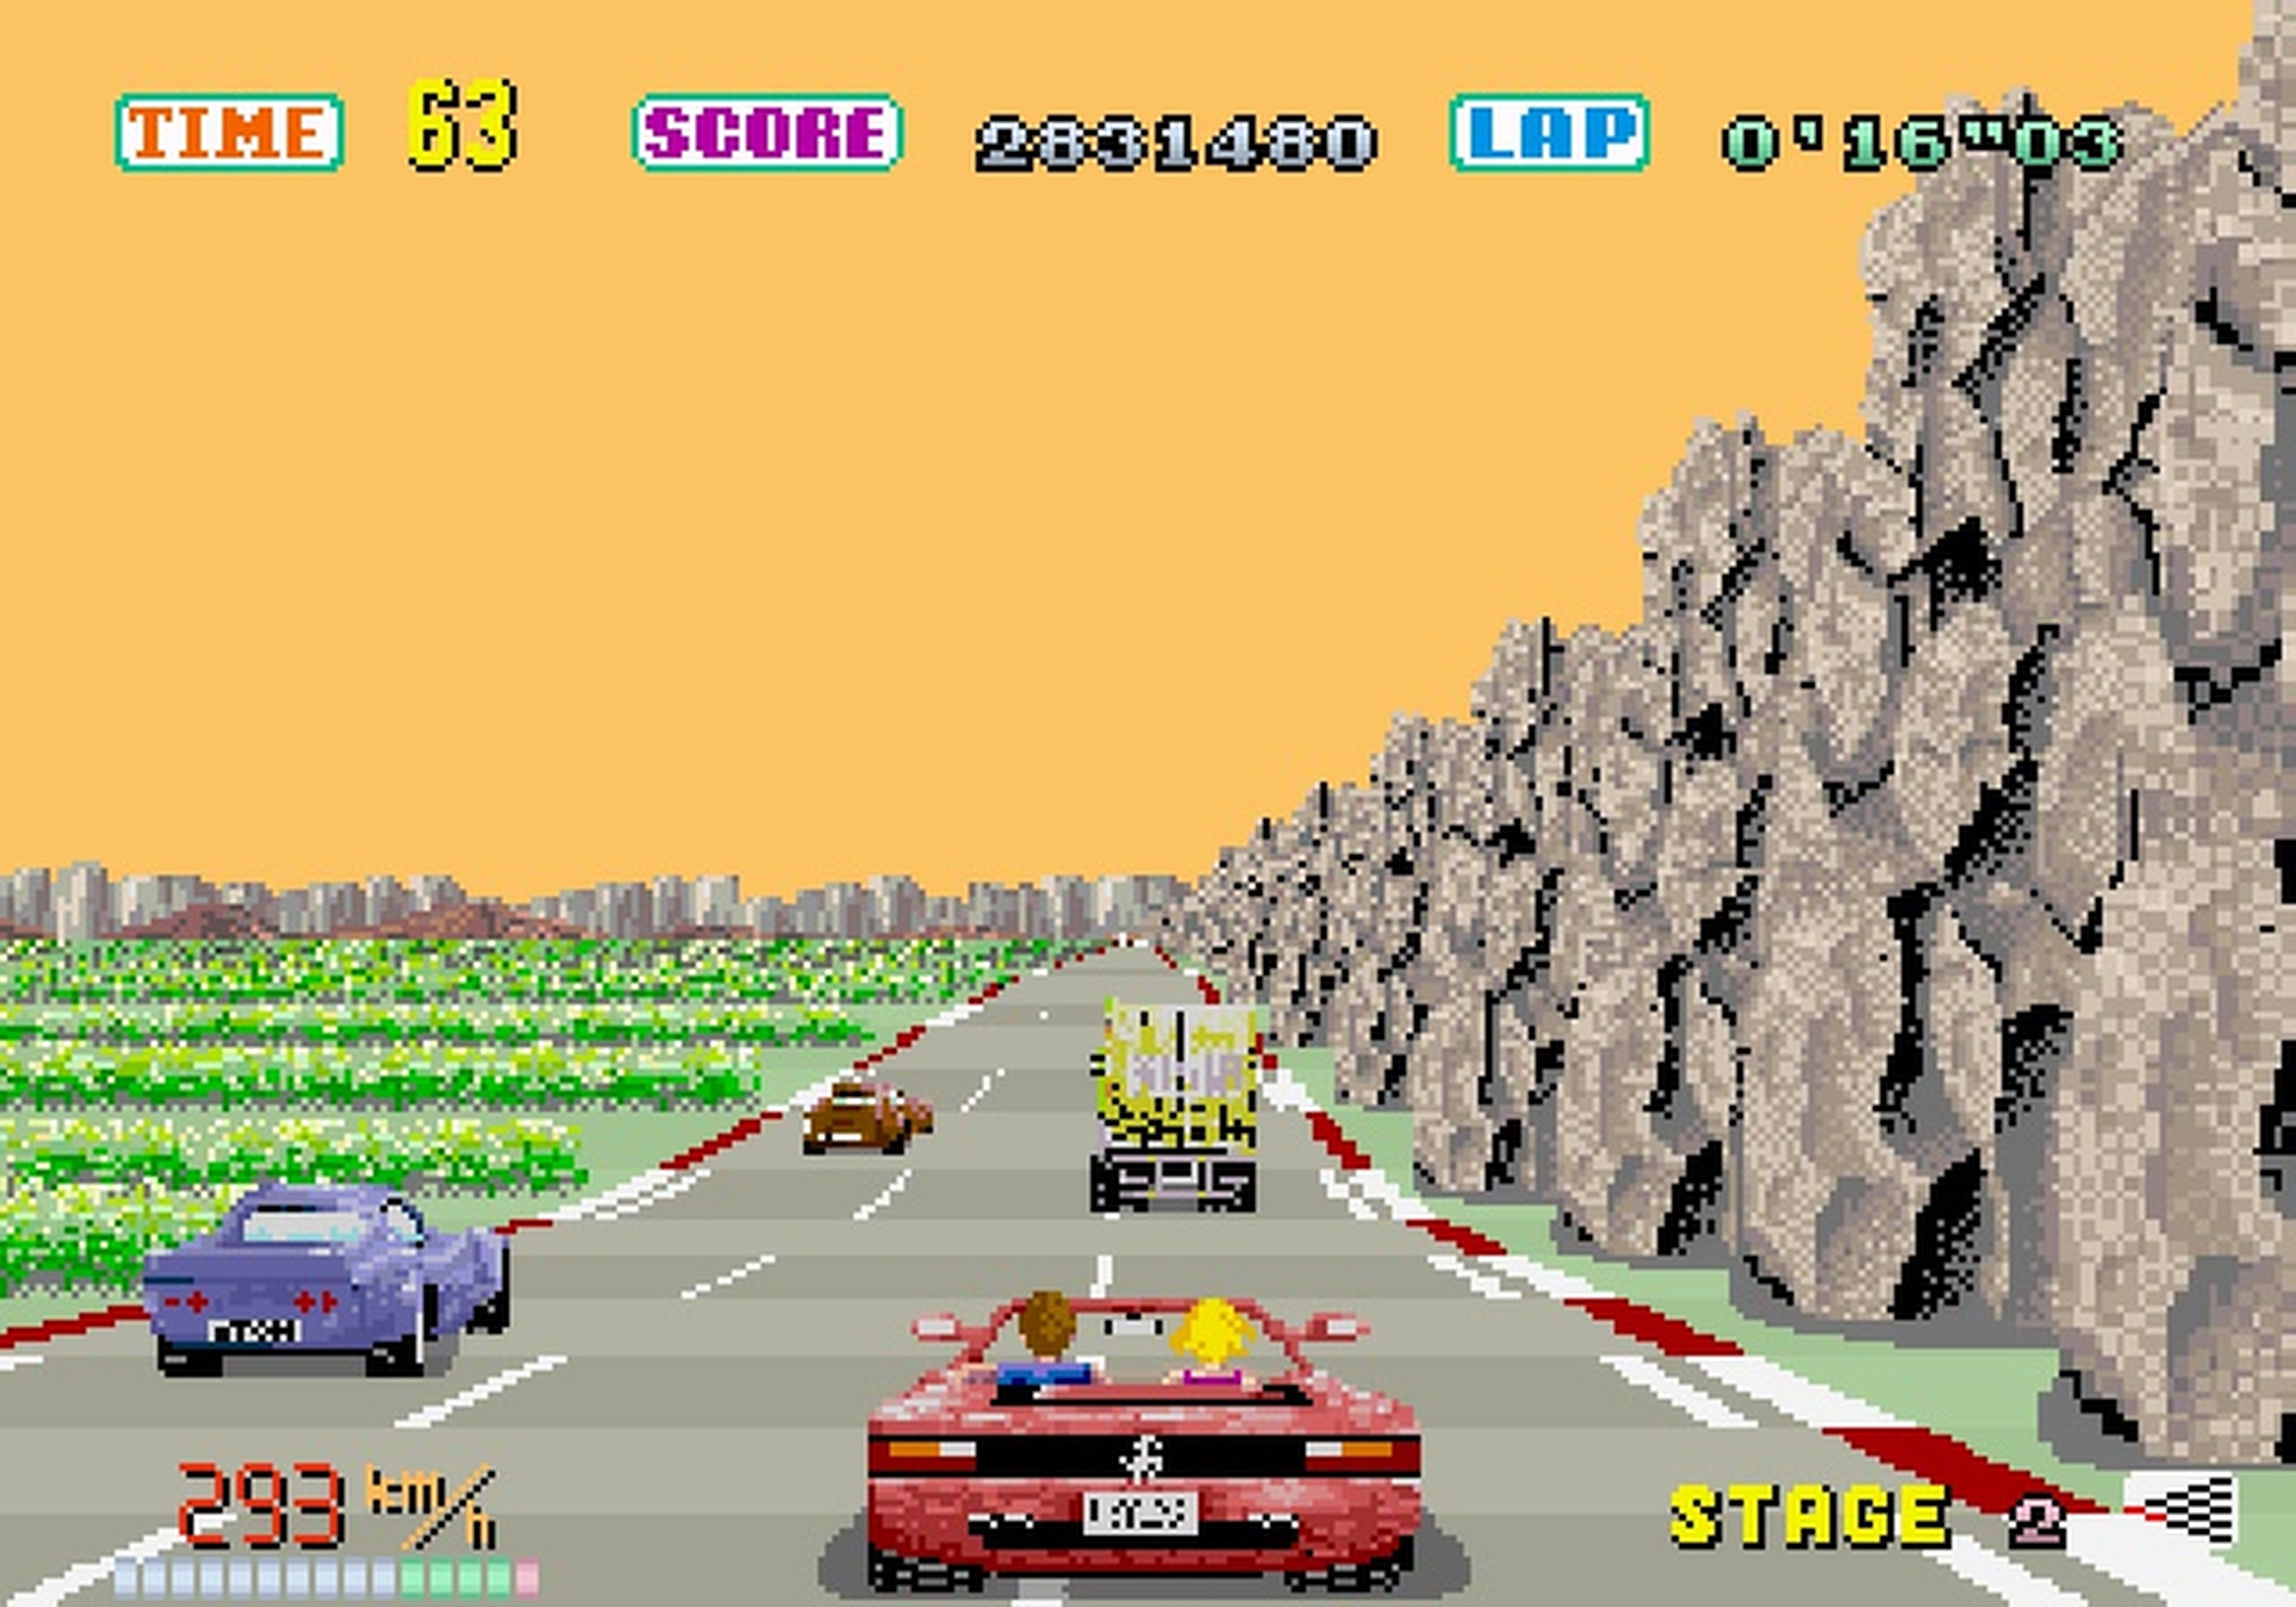 La historia de los arcade racers, en Hobby Consolas